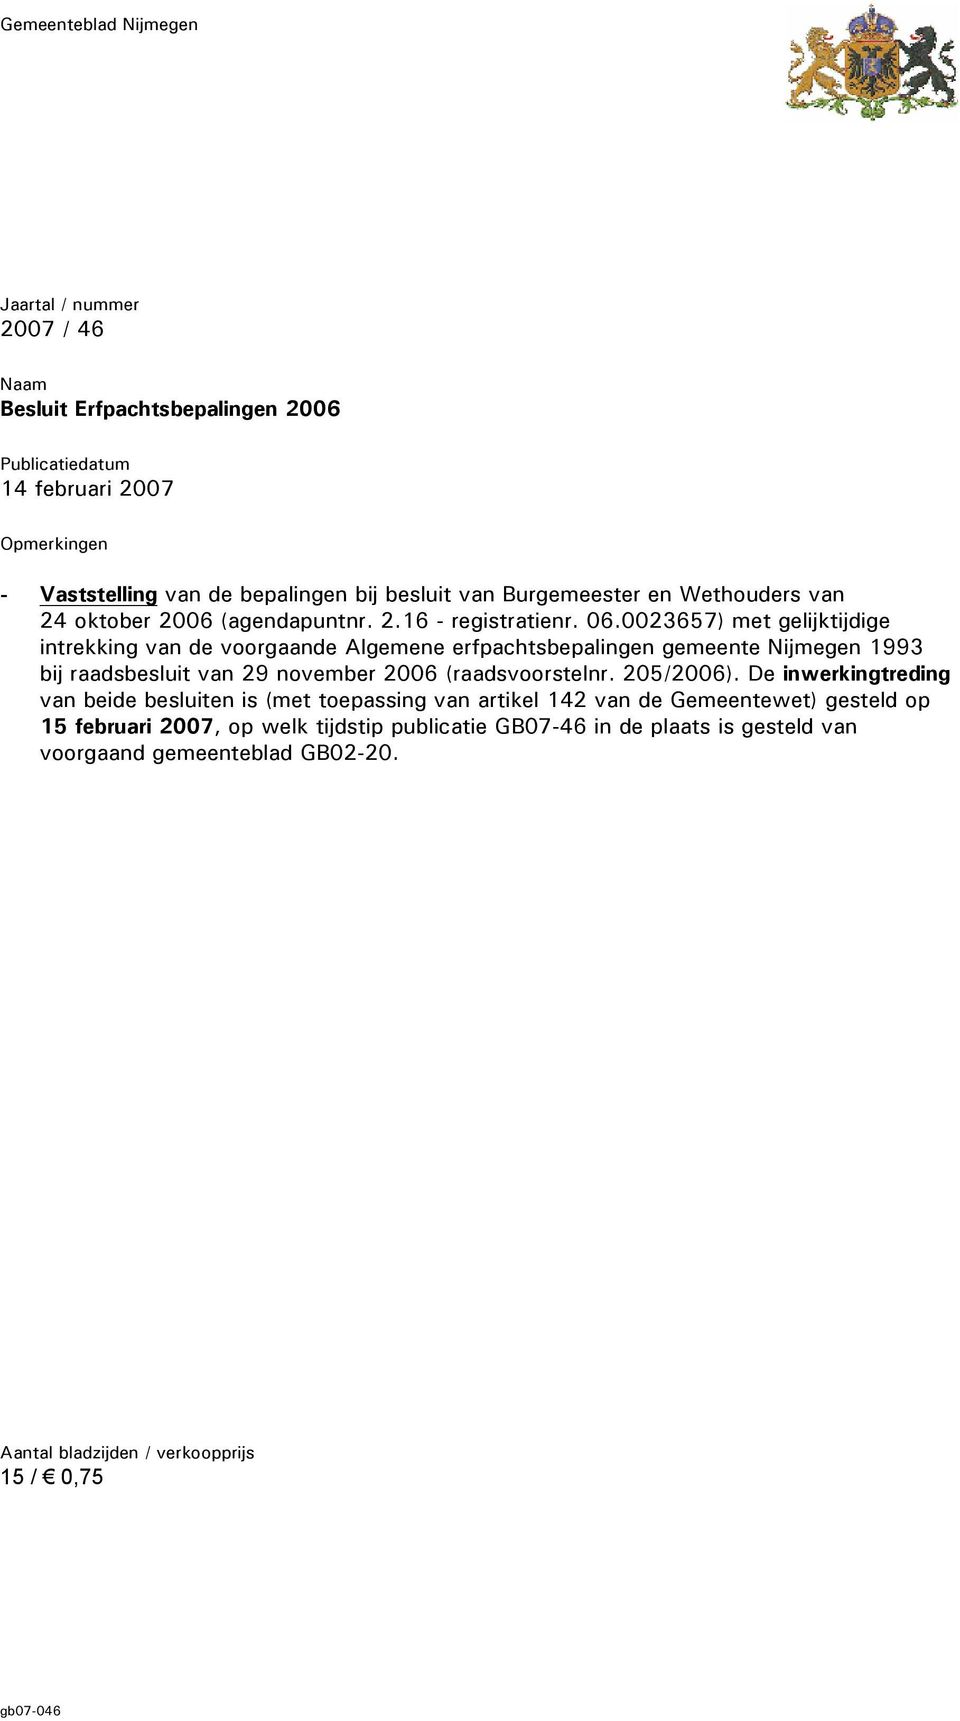 0023657) met gelijktijdige intrekking van de voorgaande Algemene erfpachtsbepalingen gemeente Nijmegen 1993 bij raadsbesluit van 29 november 2006 (raadsvoorstelnr. 205/2006).